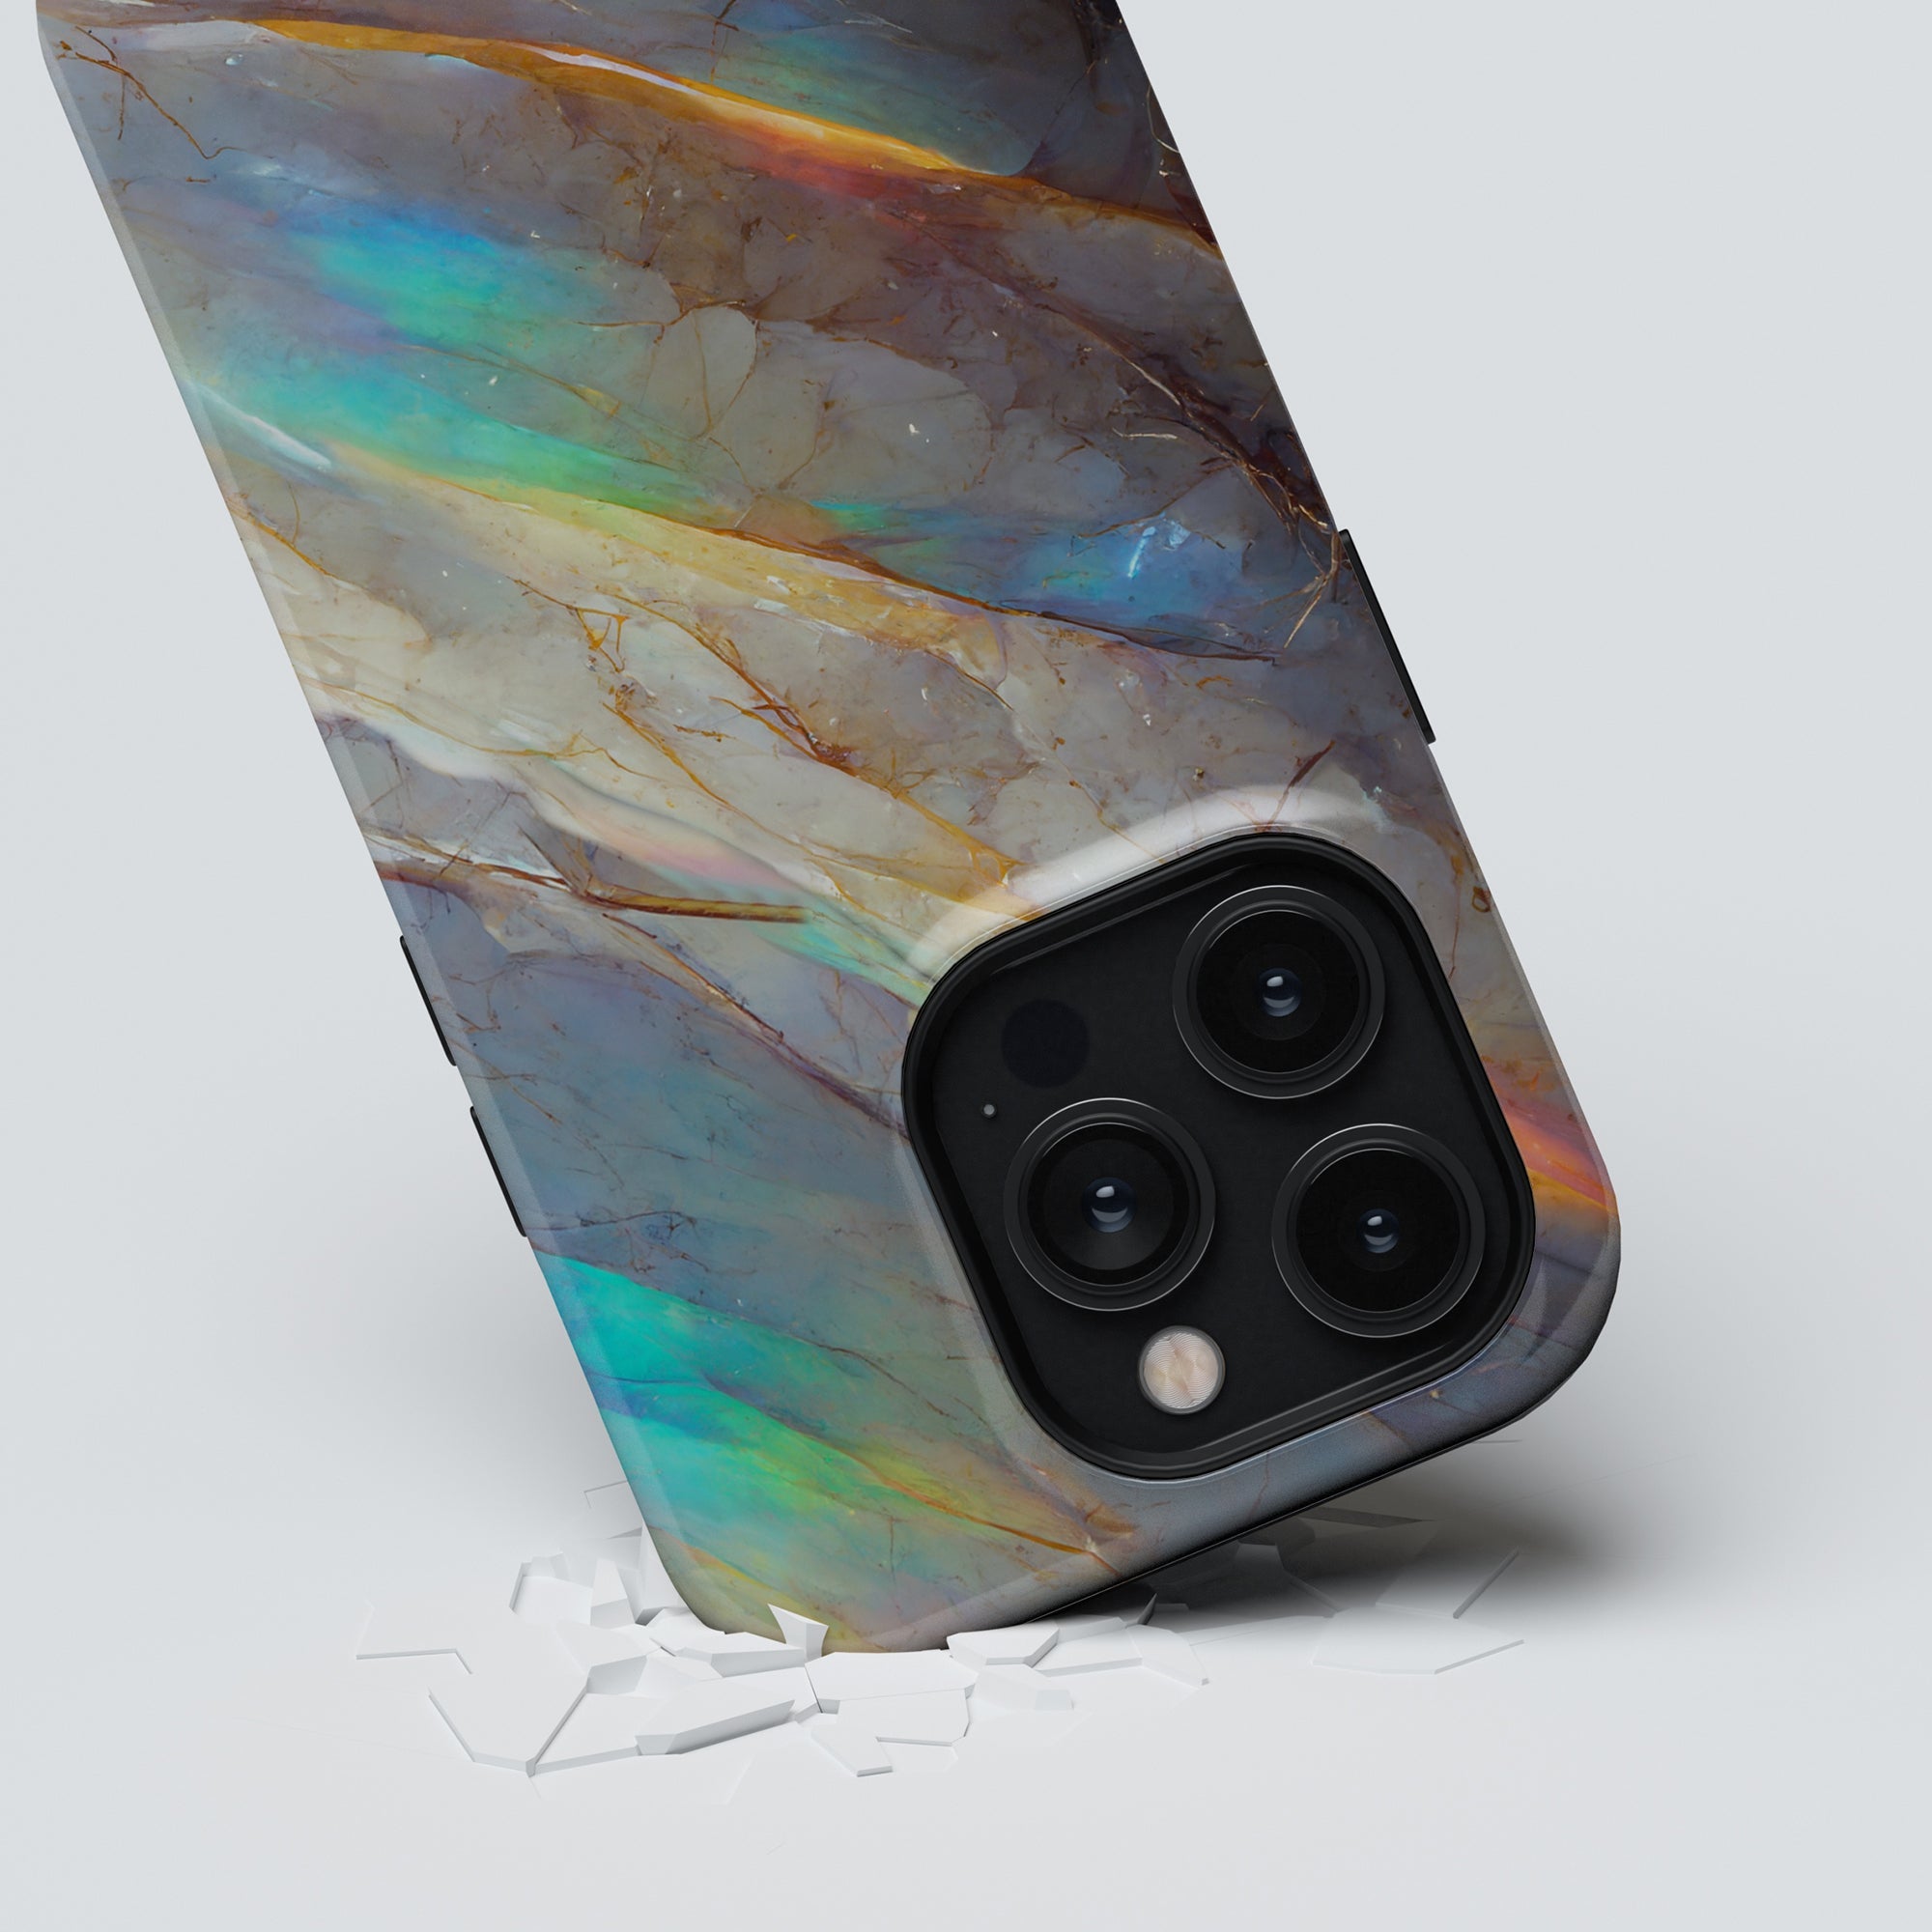 Ett Crystal - Tough Case för iPhone 11, ger ett exceptionellt skydd för din mobiltelefon i en livfull och färgstark design.